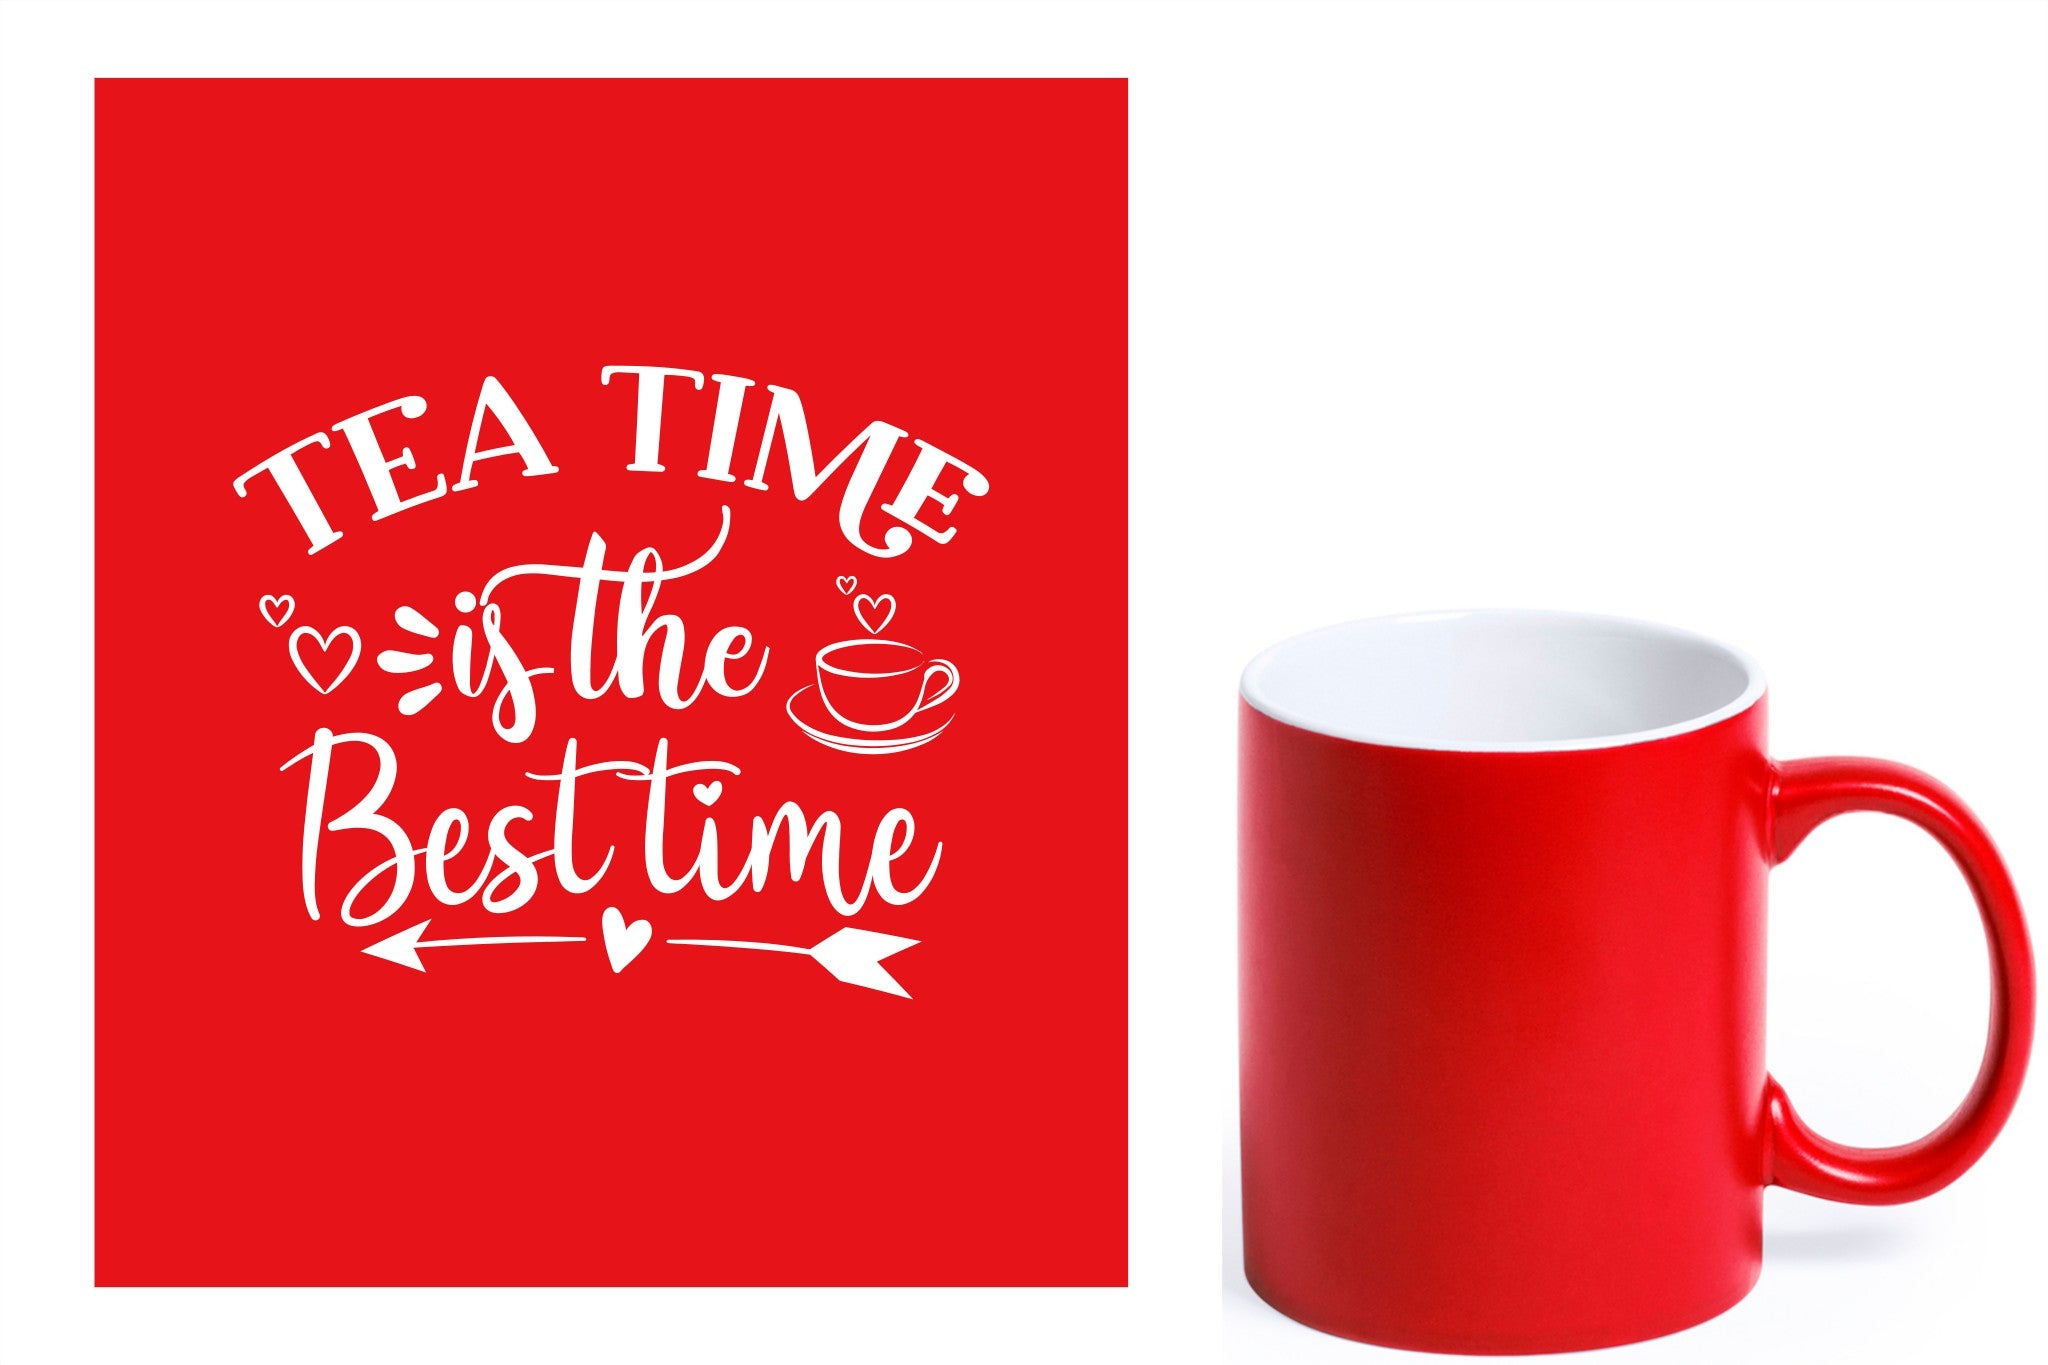 rode keramische mok met witte gravure  'Tea time is the best time'.